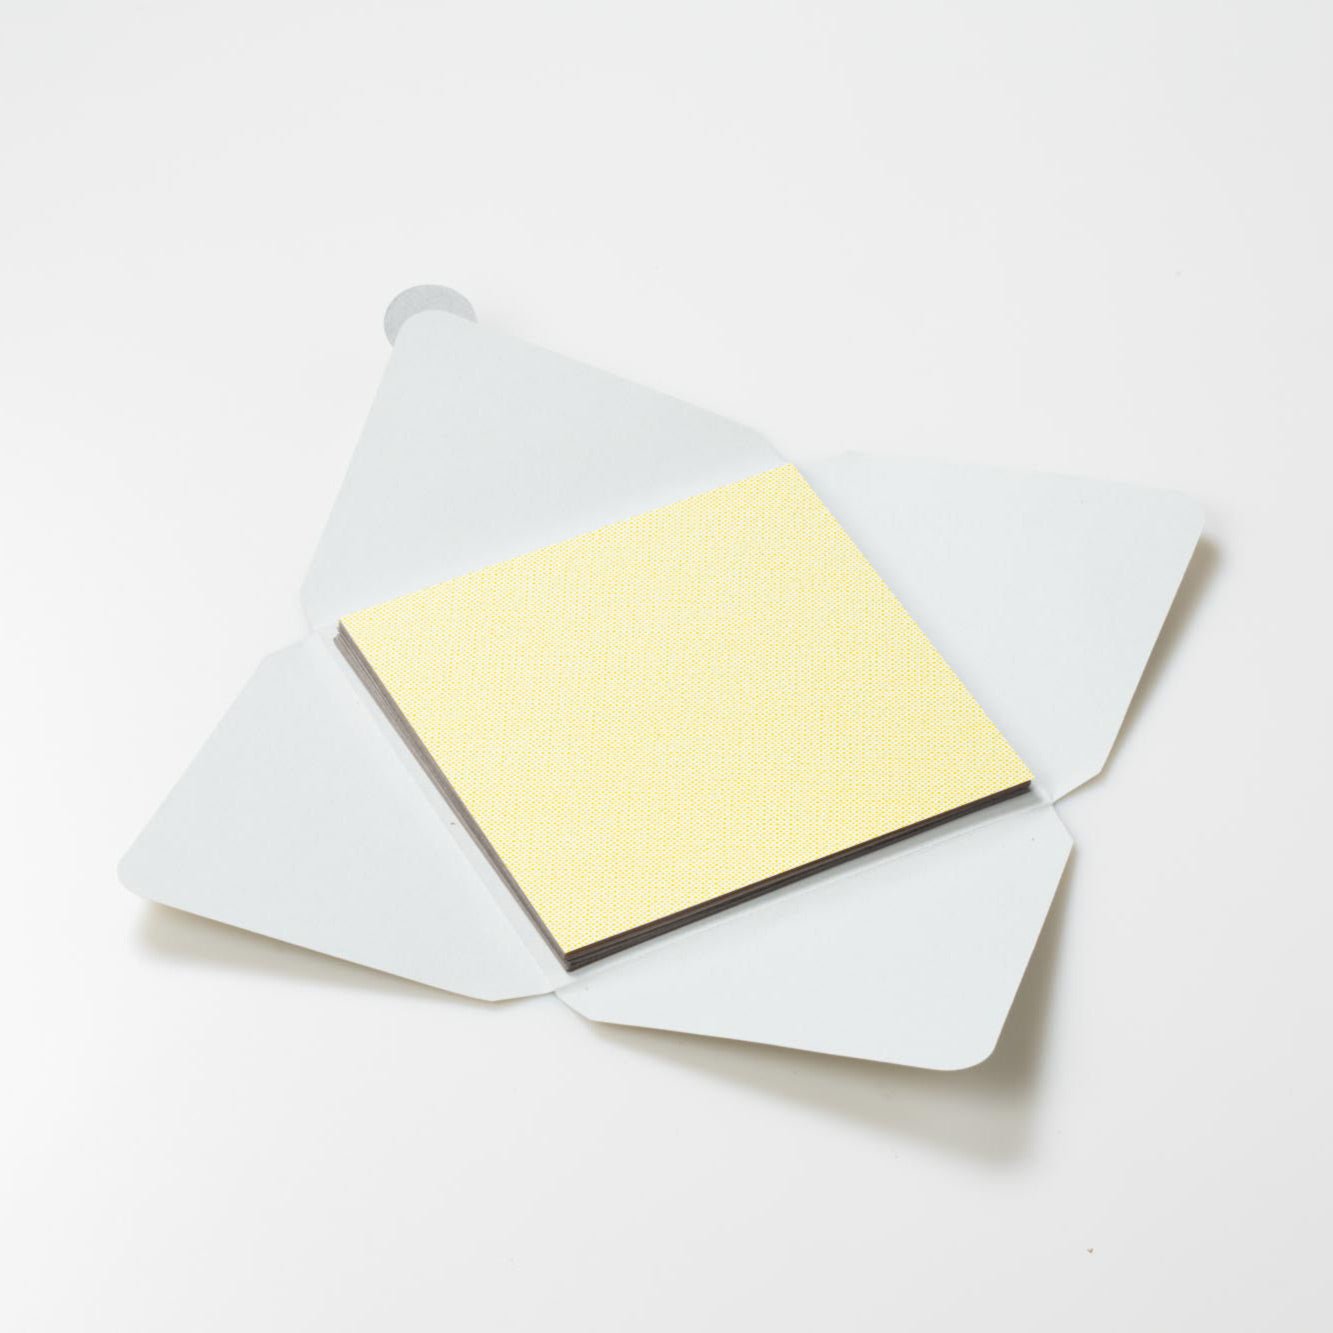 Kit di fogli "Lino Giallo" formato origami 15 cm x 15 cm - Manamant Paper Tales -FGA6112FBM2D